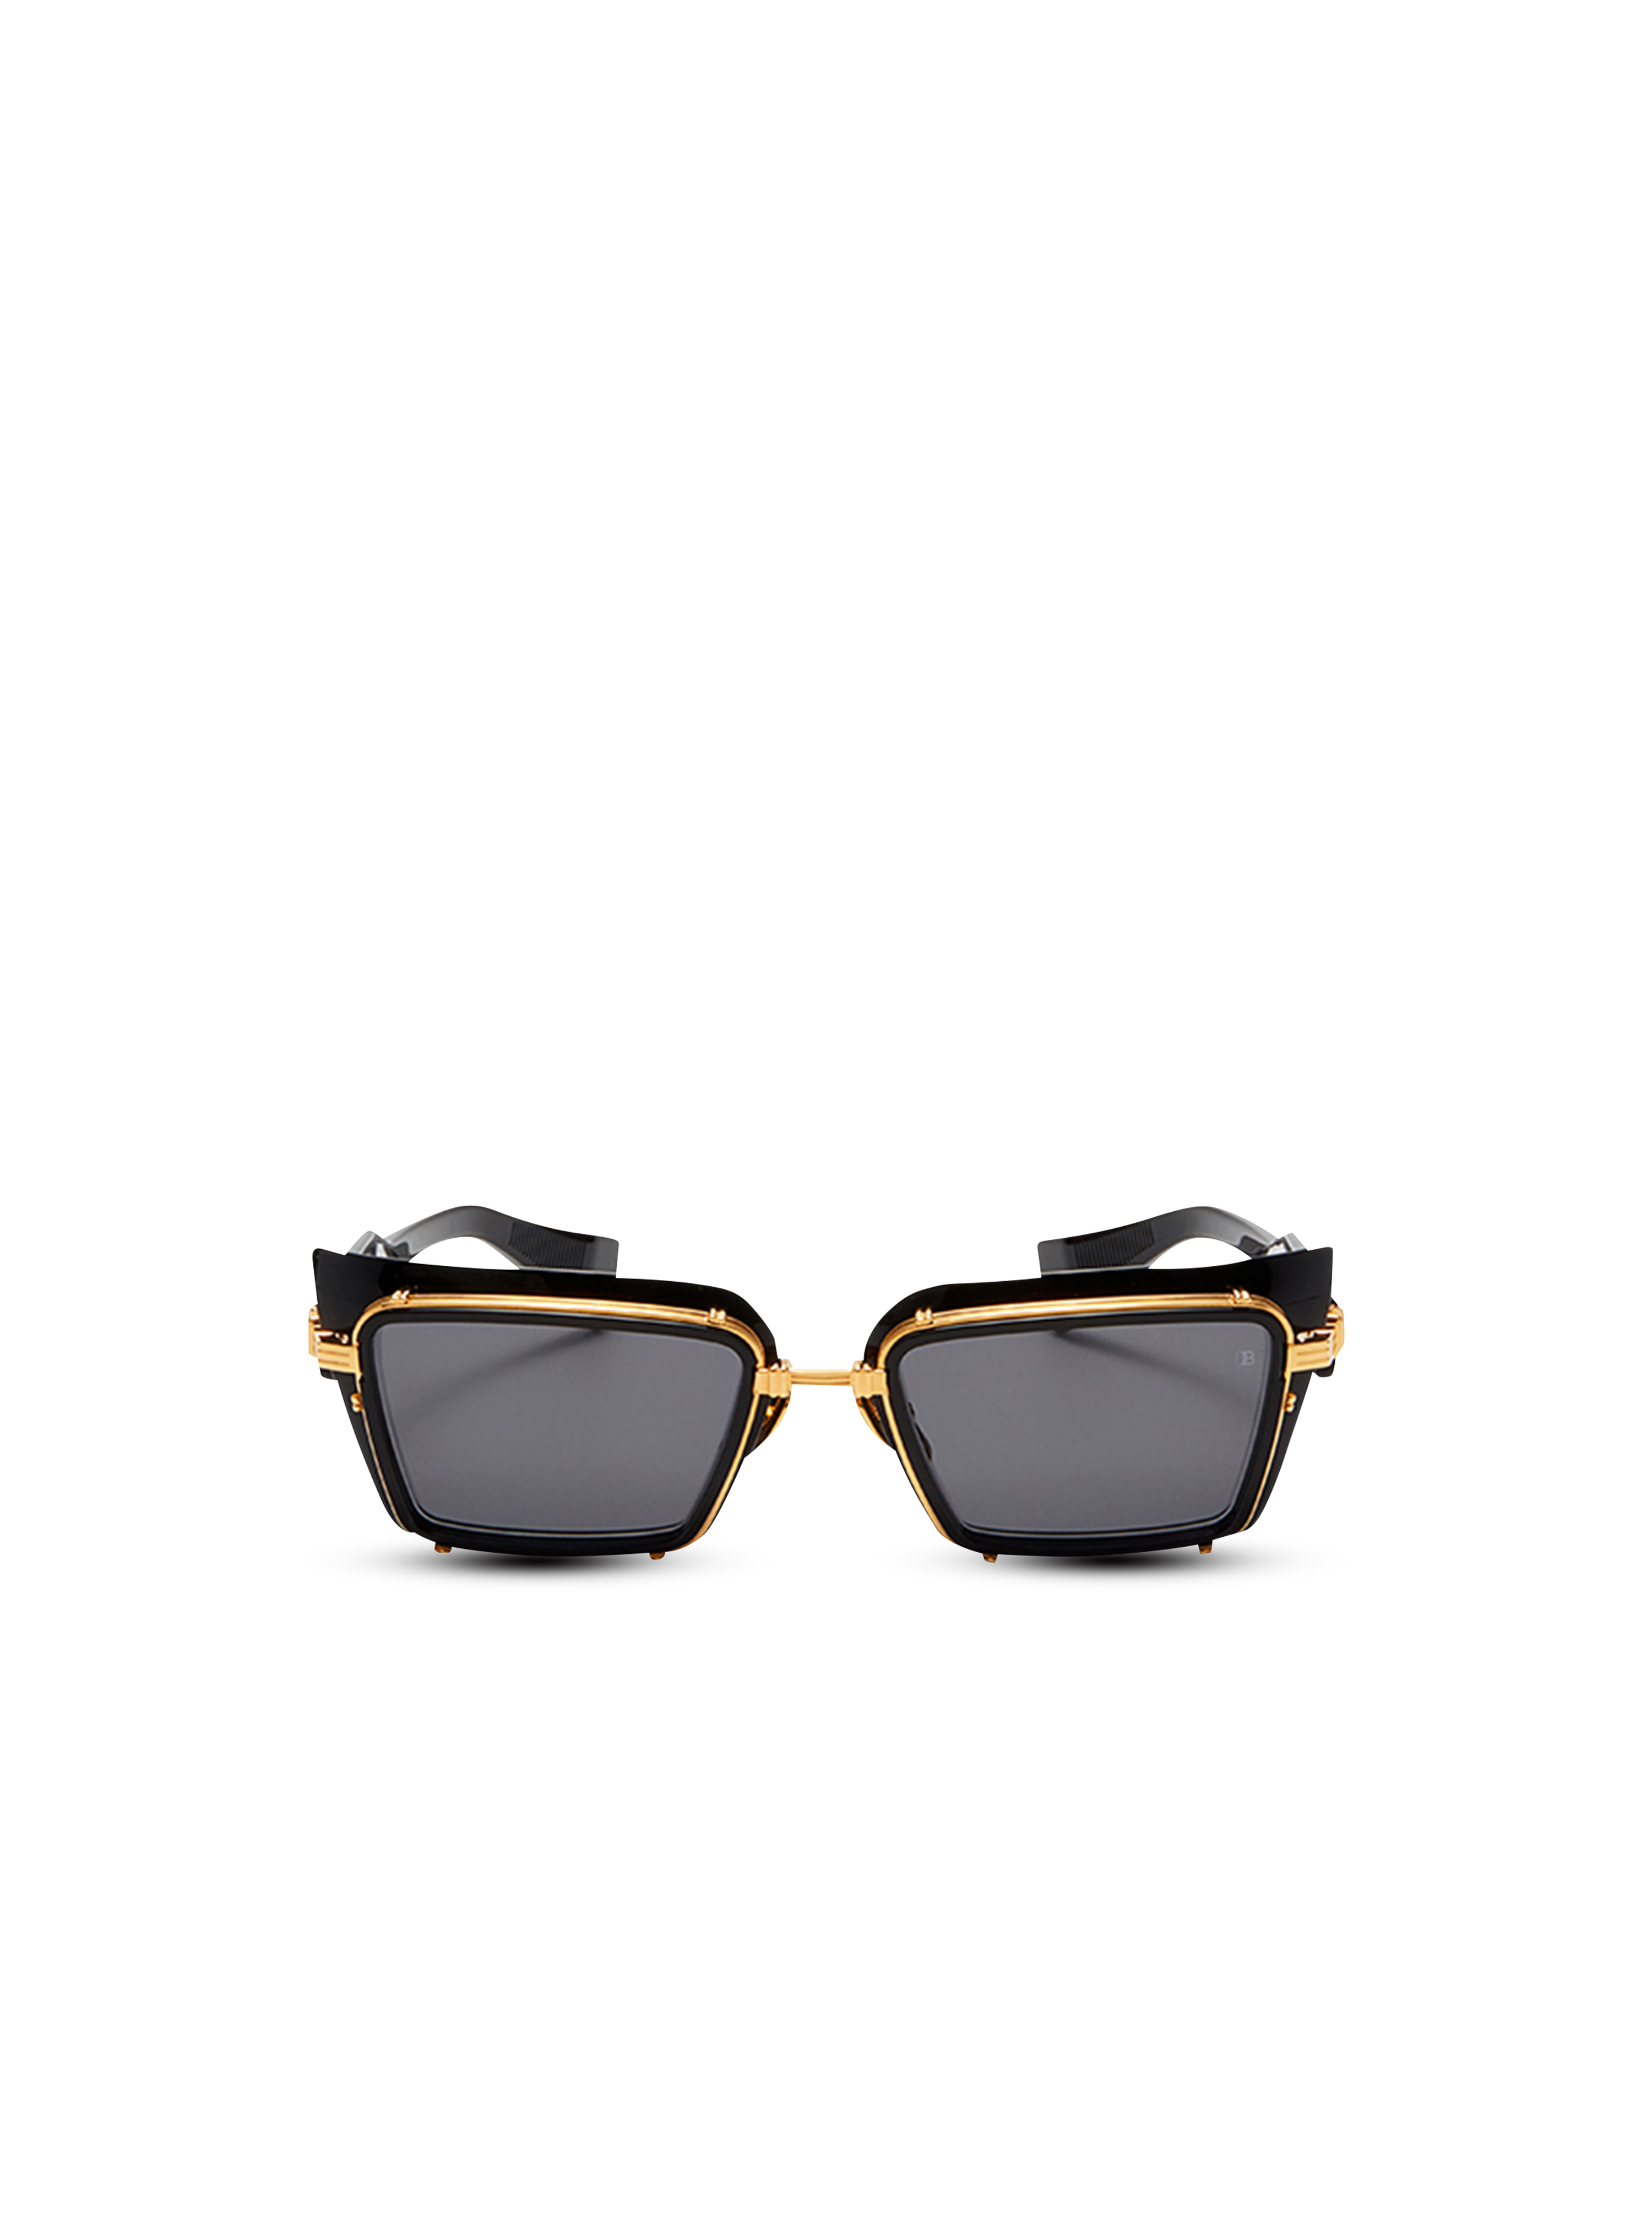 Sonnenbrille Admirable aus Titan, schwarz